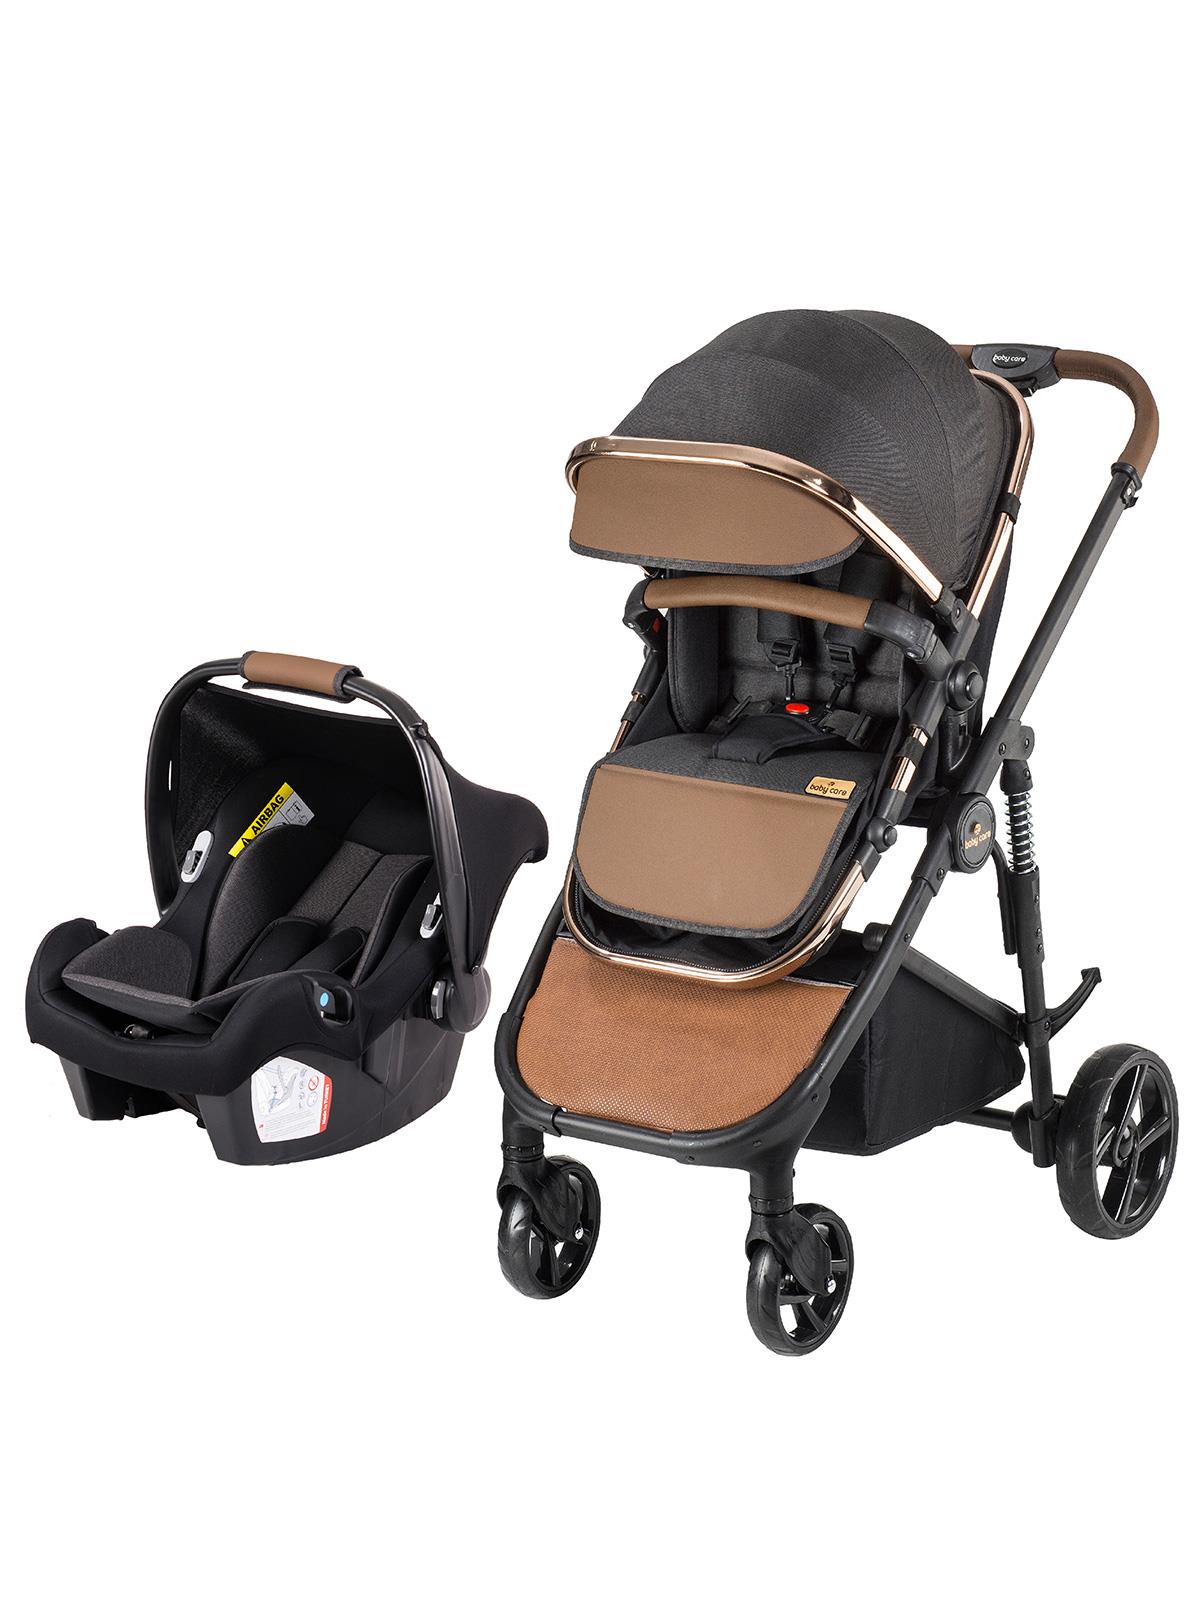 babycare bc410 babycare elantra chrome travel puset sistem bebek arabasi siyah fiyati bc410 syh